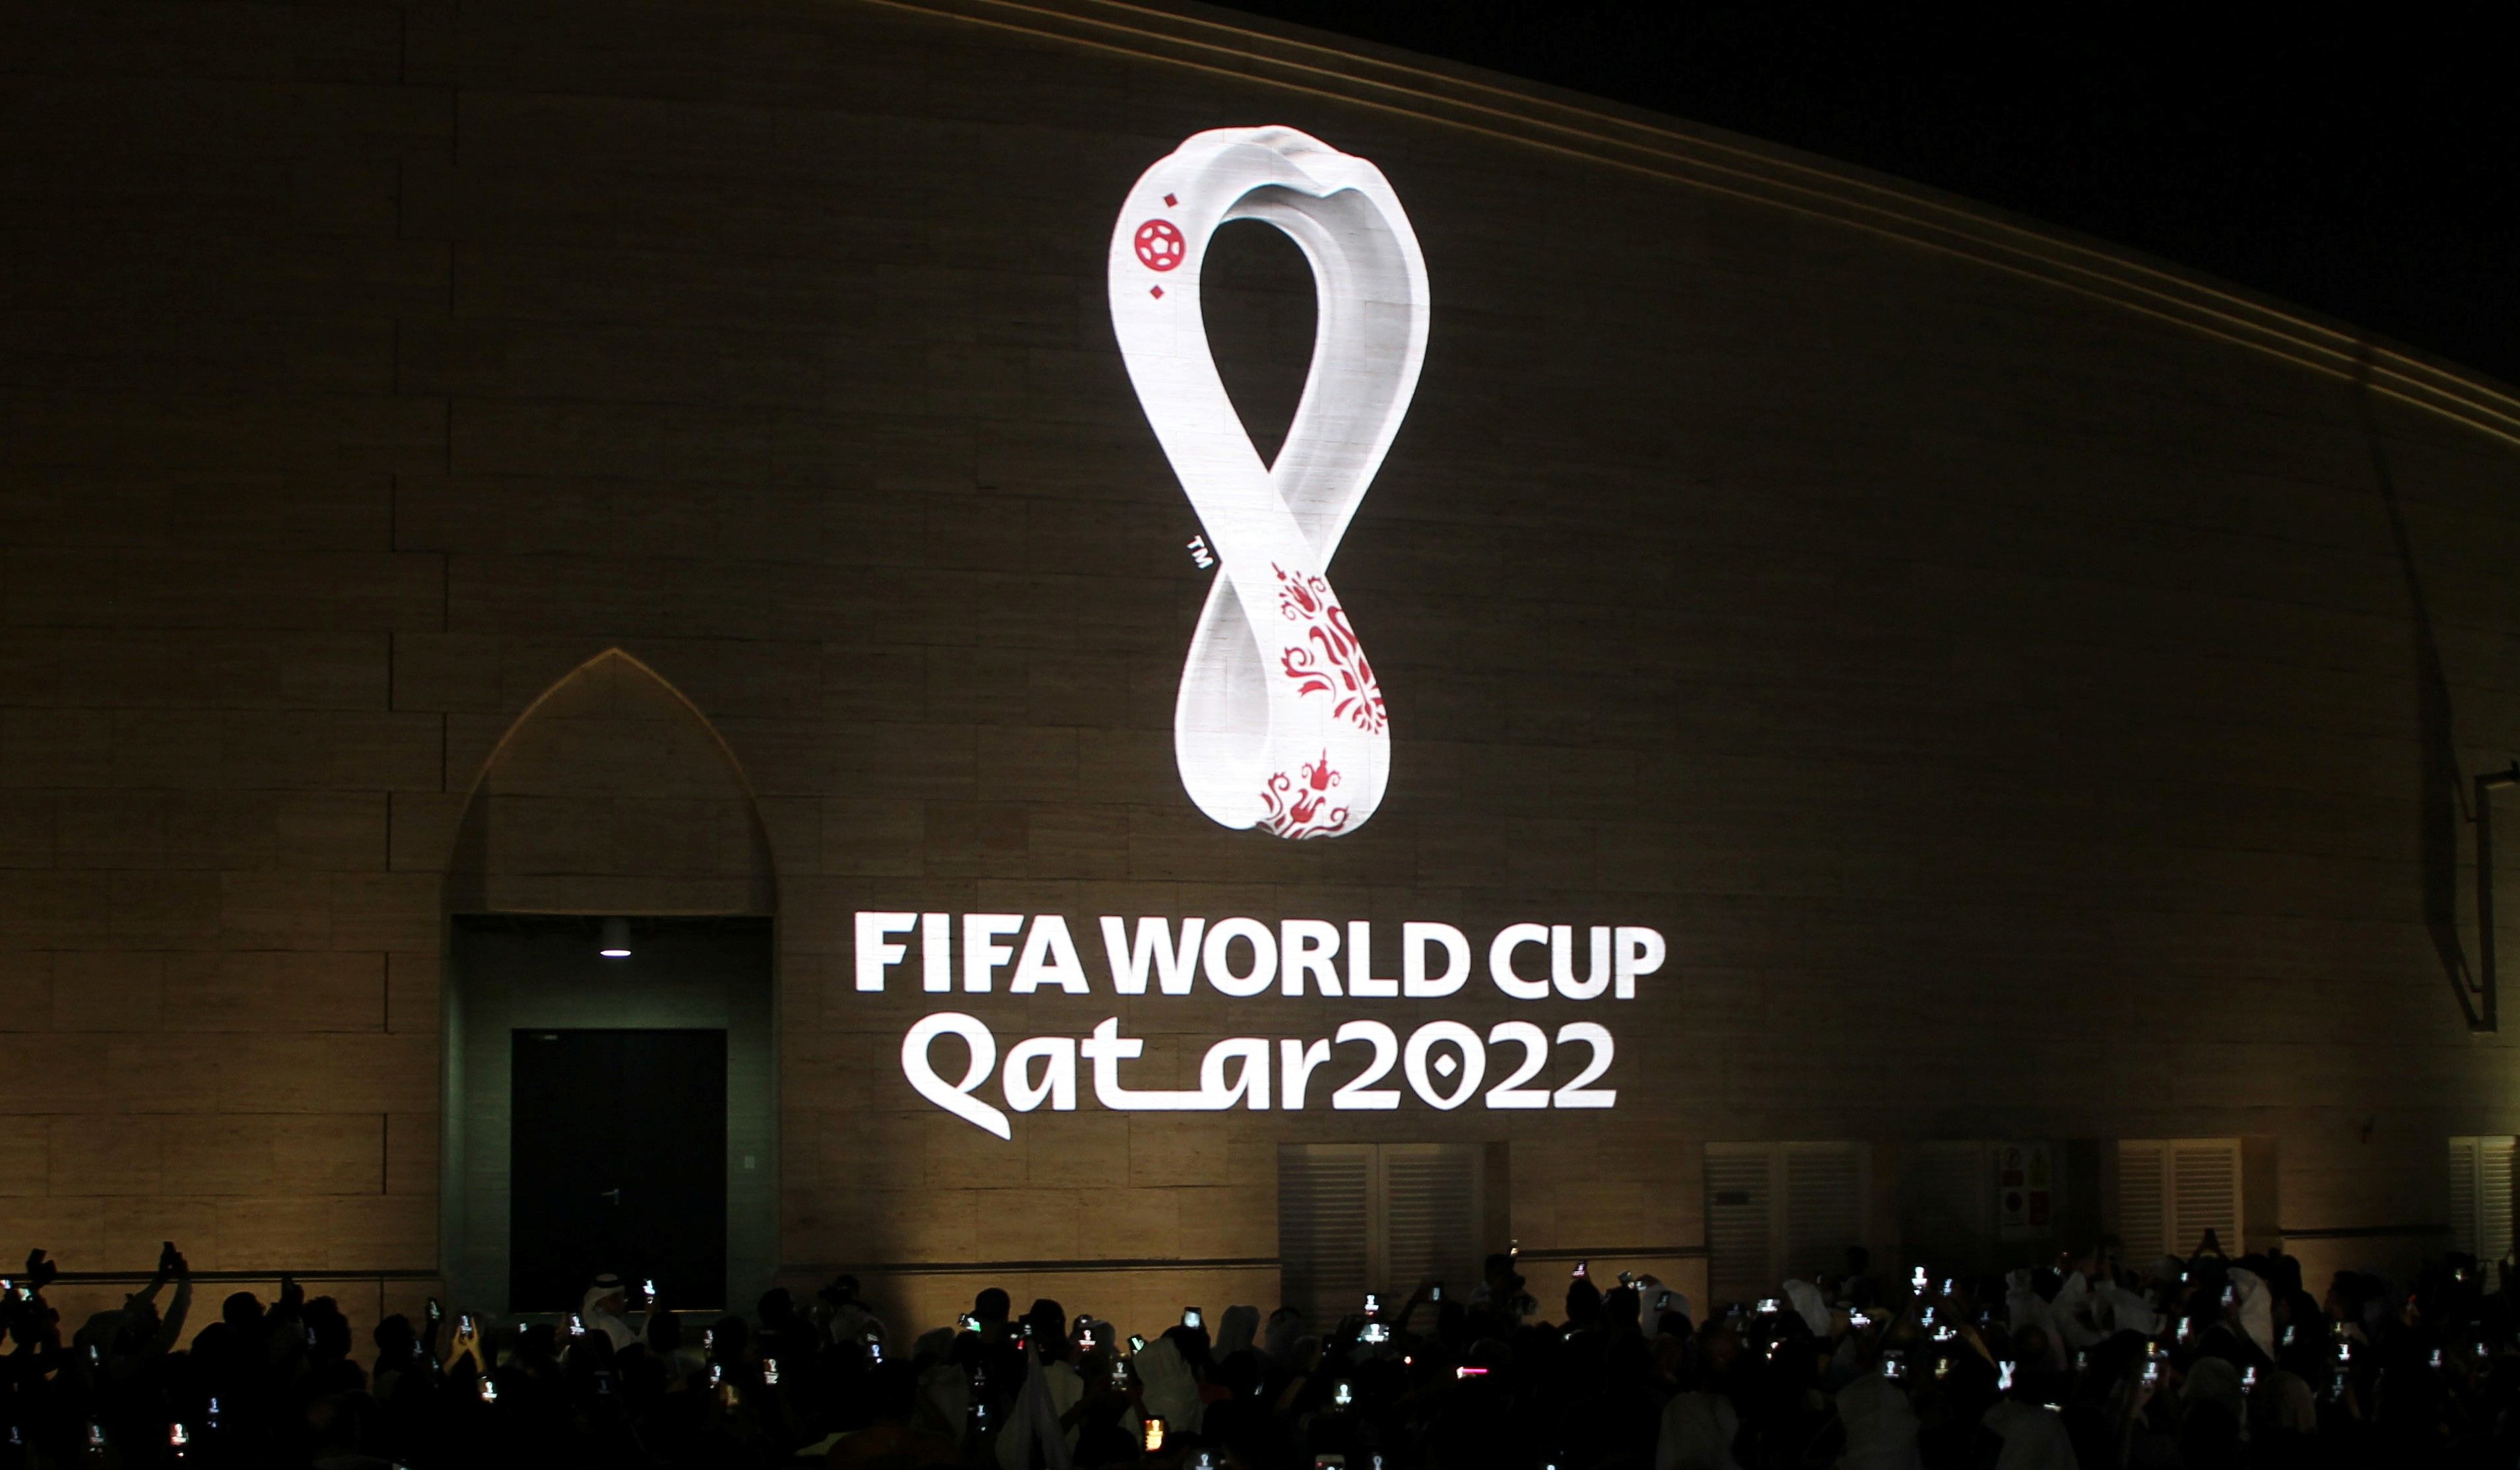 Логотип чемпионата мира 2022 по футболу